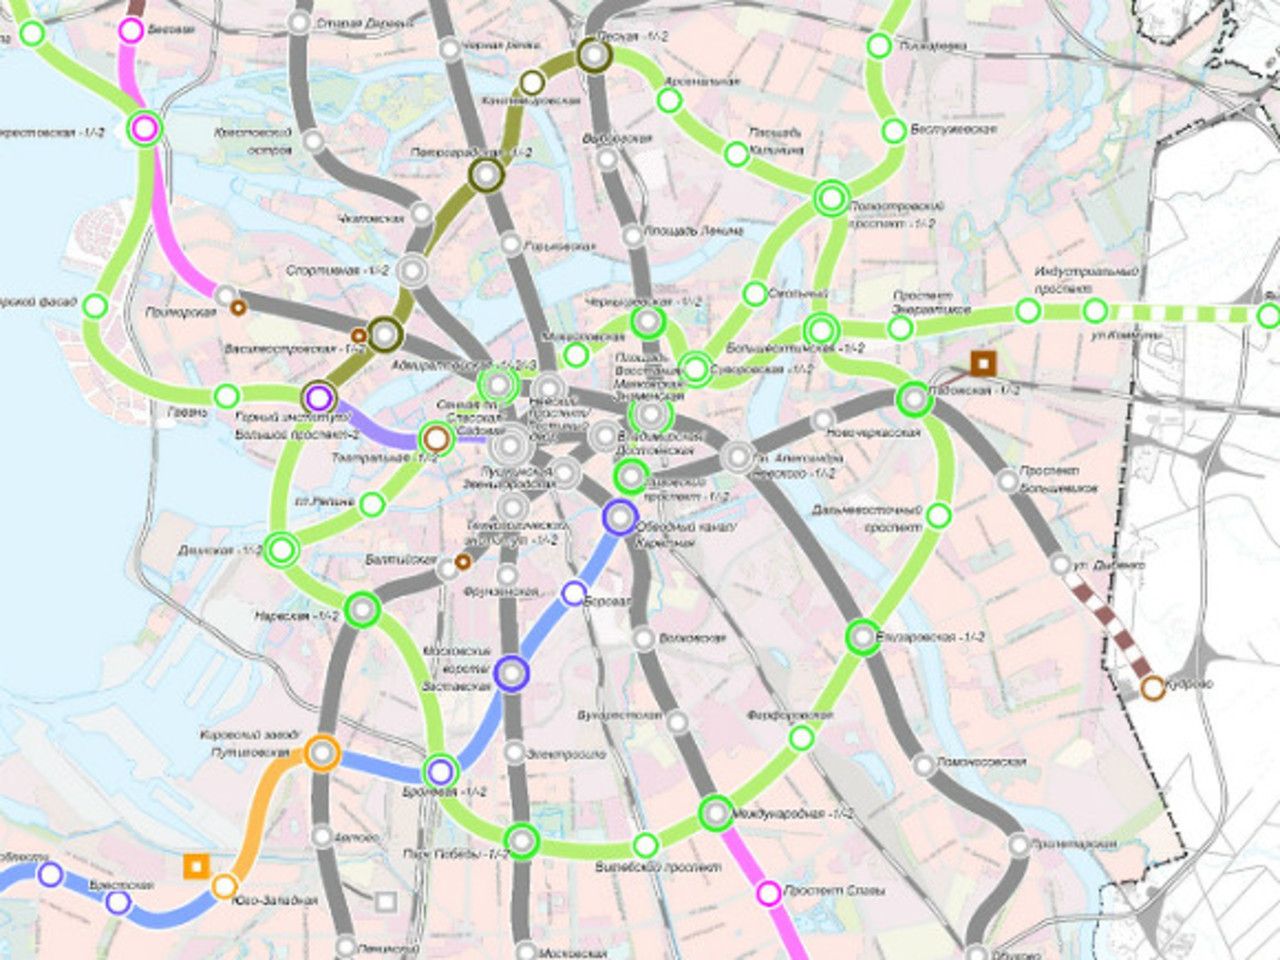 новые станции метро в петербурге